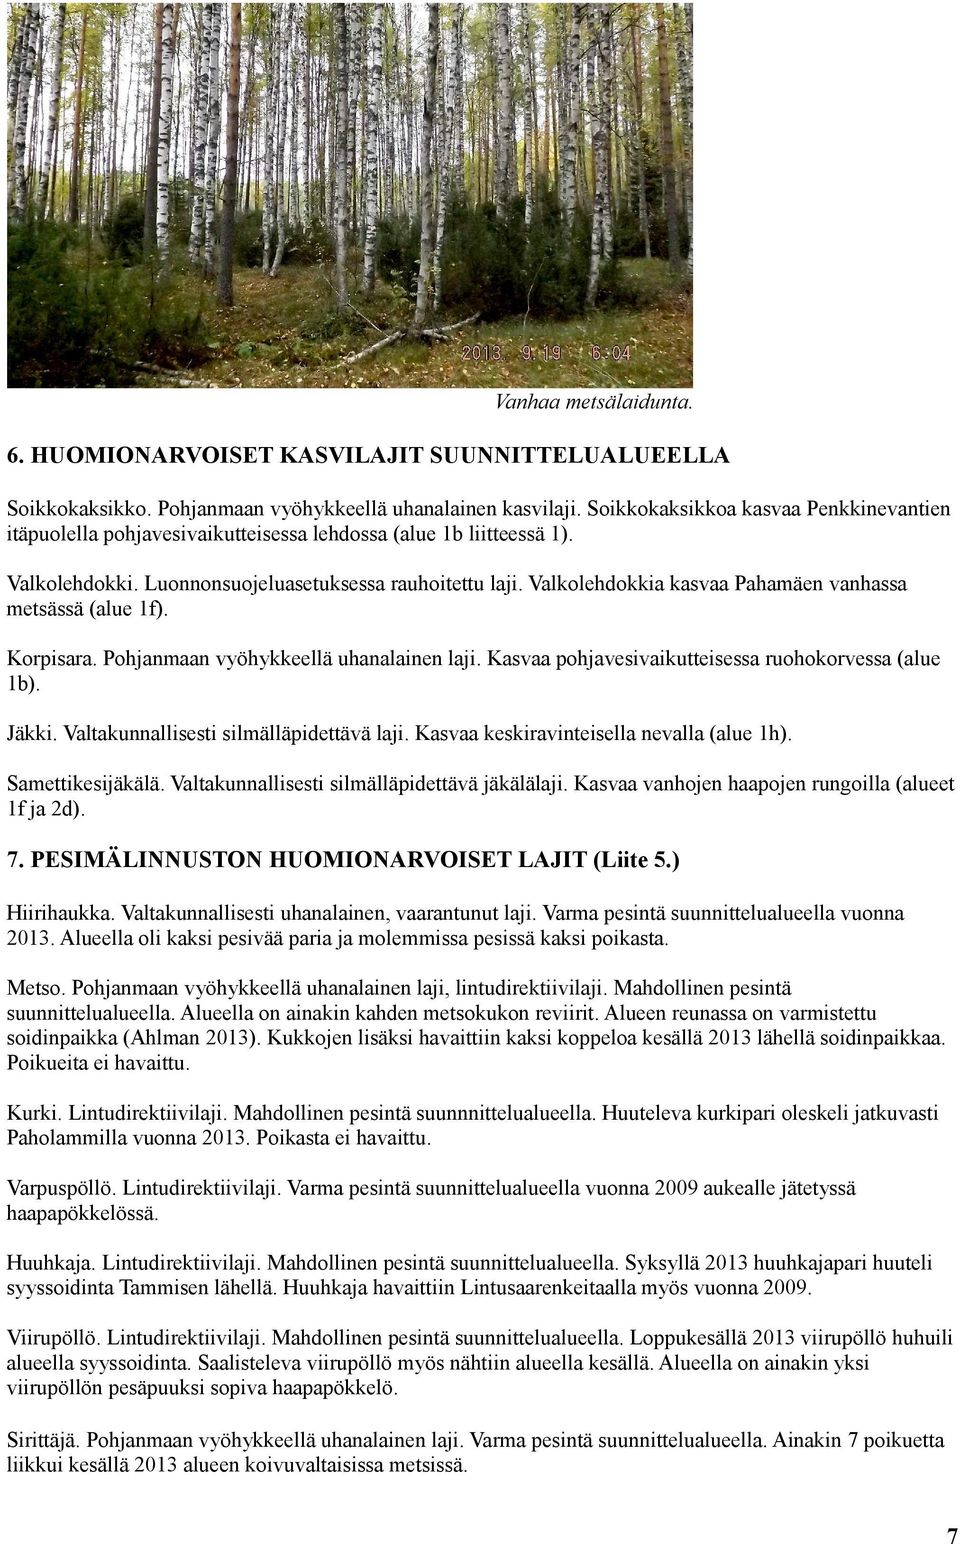 Valkolehdokkia kasvaa Pahamäen vanhassa metsässä (alue 1f). Korpisara. Pohjanmaan vyöhykkeellä uhanalainen laji. Kasvaa pohjavesivaikutteisessa ruohokorvessa (alue 1b). Jäkki.